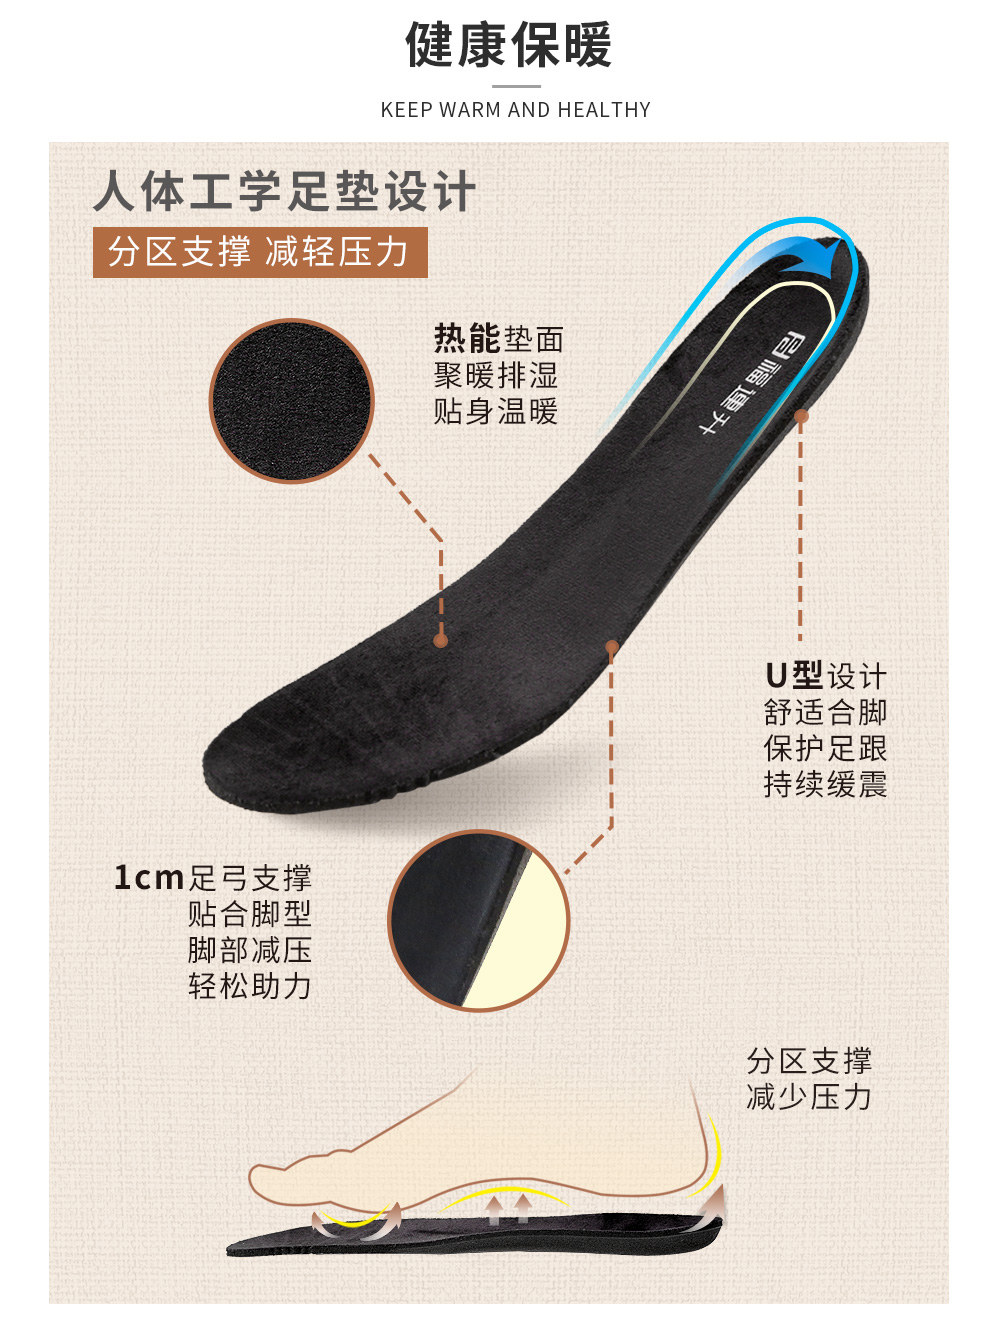 福连升休闲鞋冬季时尚运动男鞋保暖羽绒服面料轻软鞋底(图5)